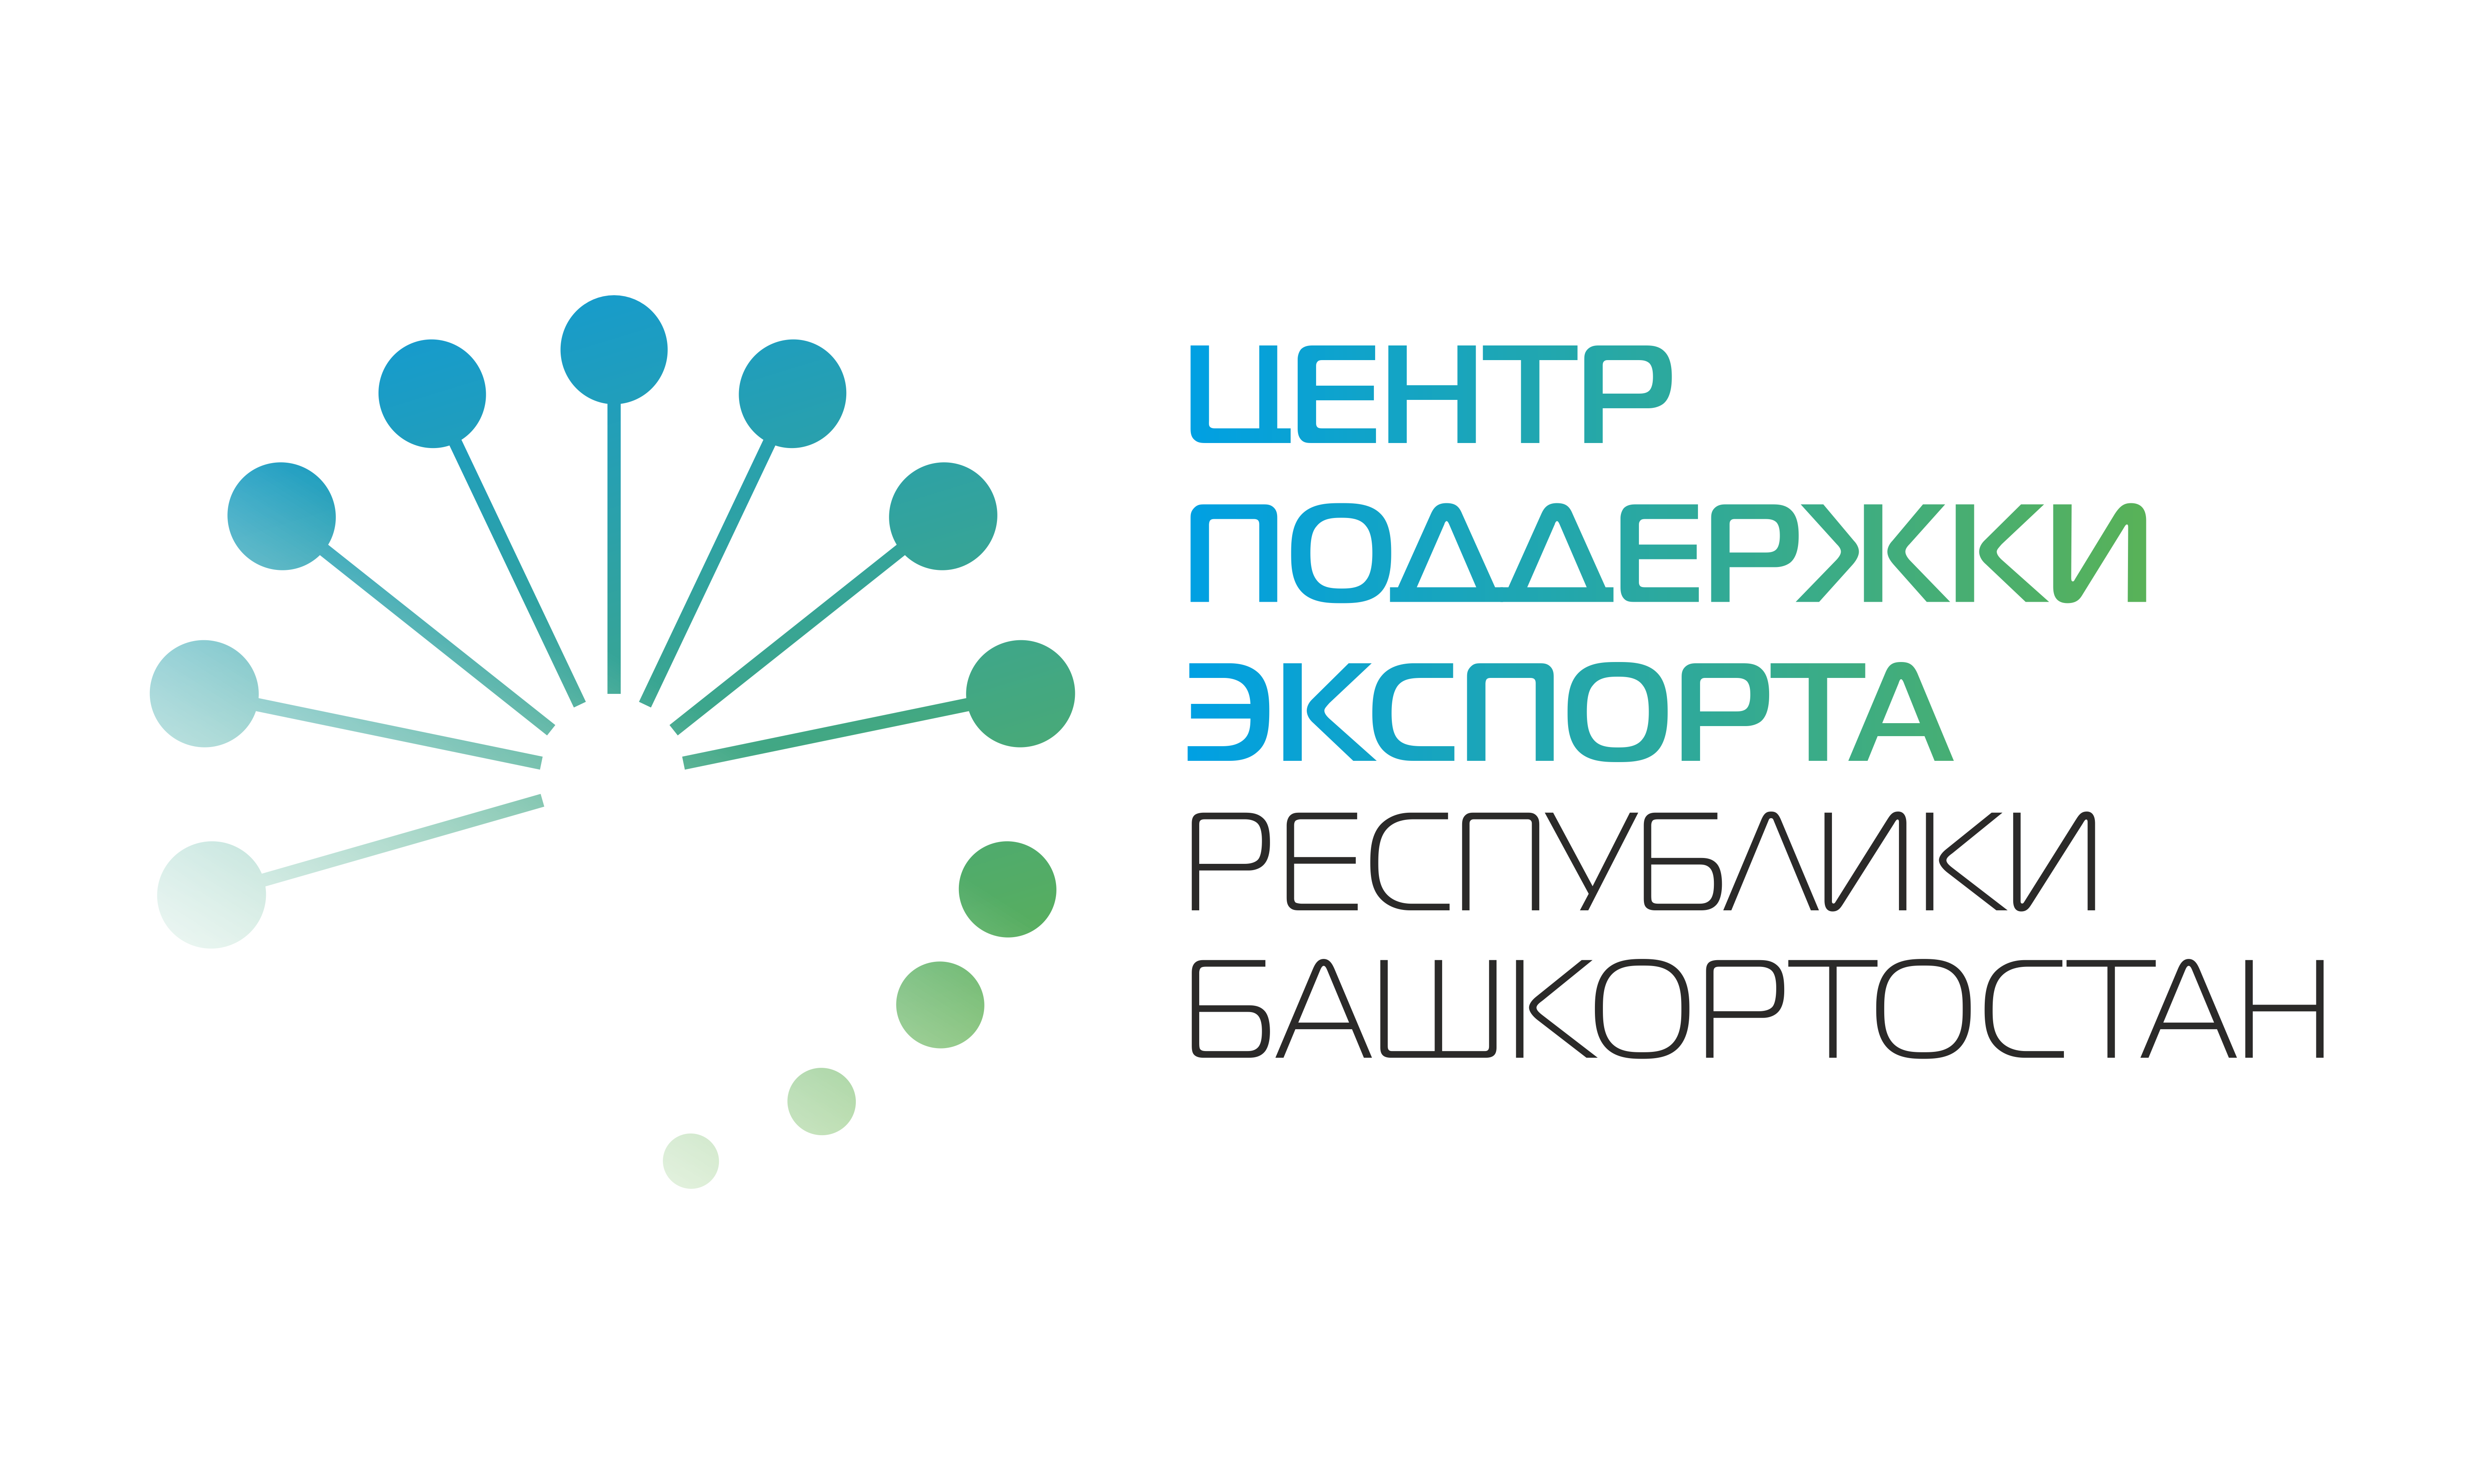 Центр поддержки экспорта Республики Башкортостан